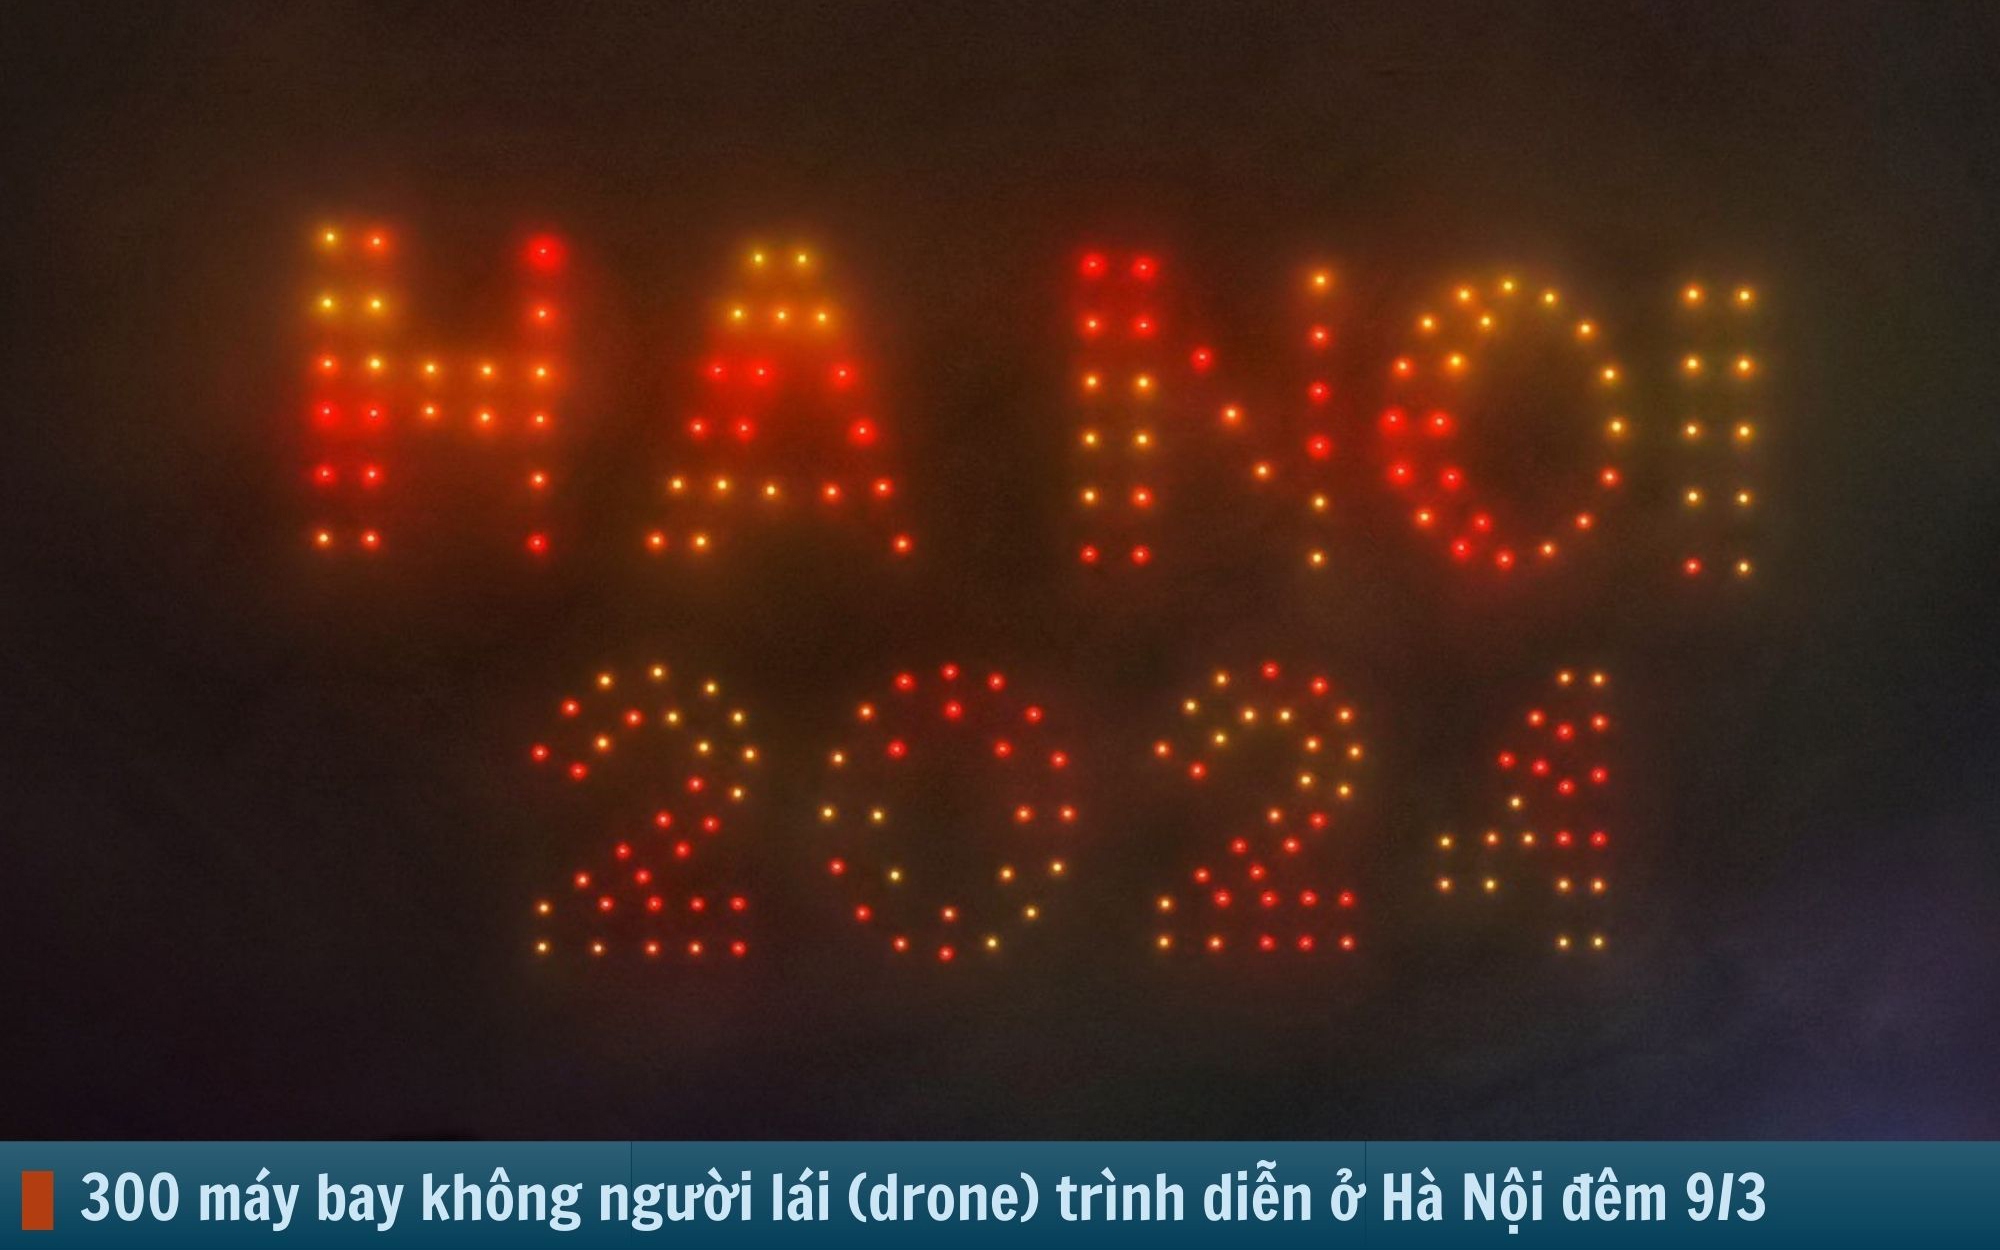 Hình ảnh báo chí 24h: 300 máy bay không người lái trình diễn ánh sáng ở Hà Nội